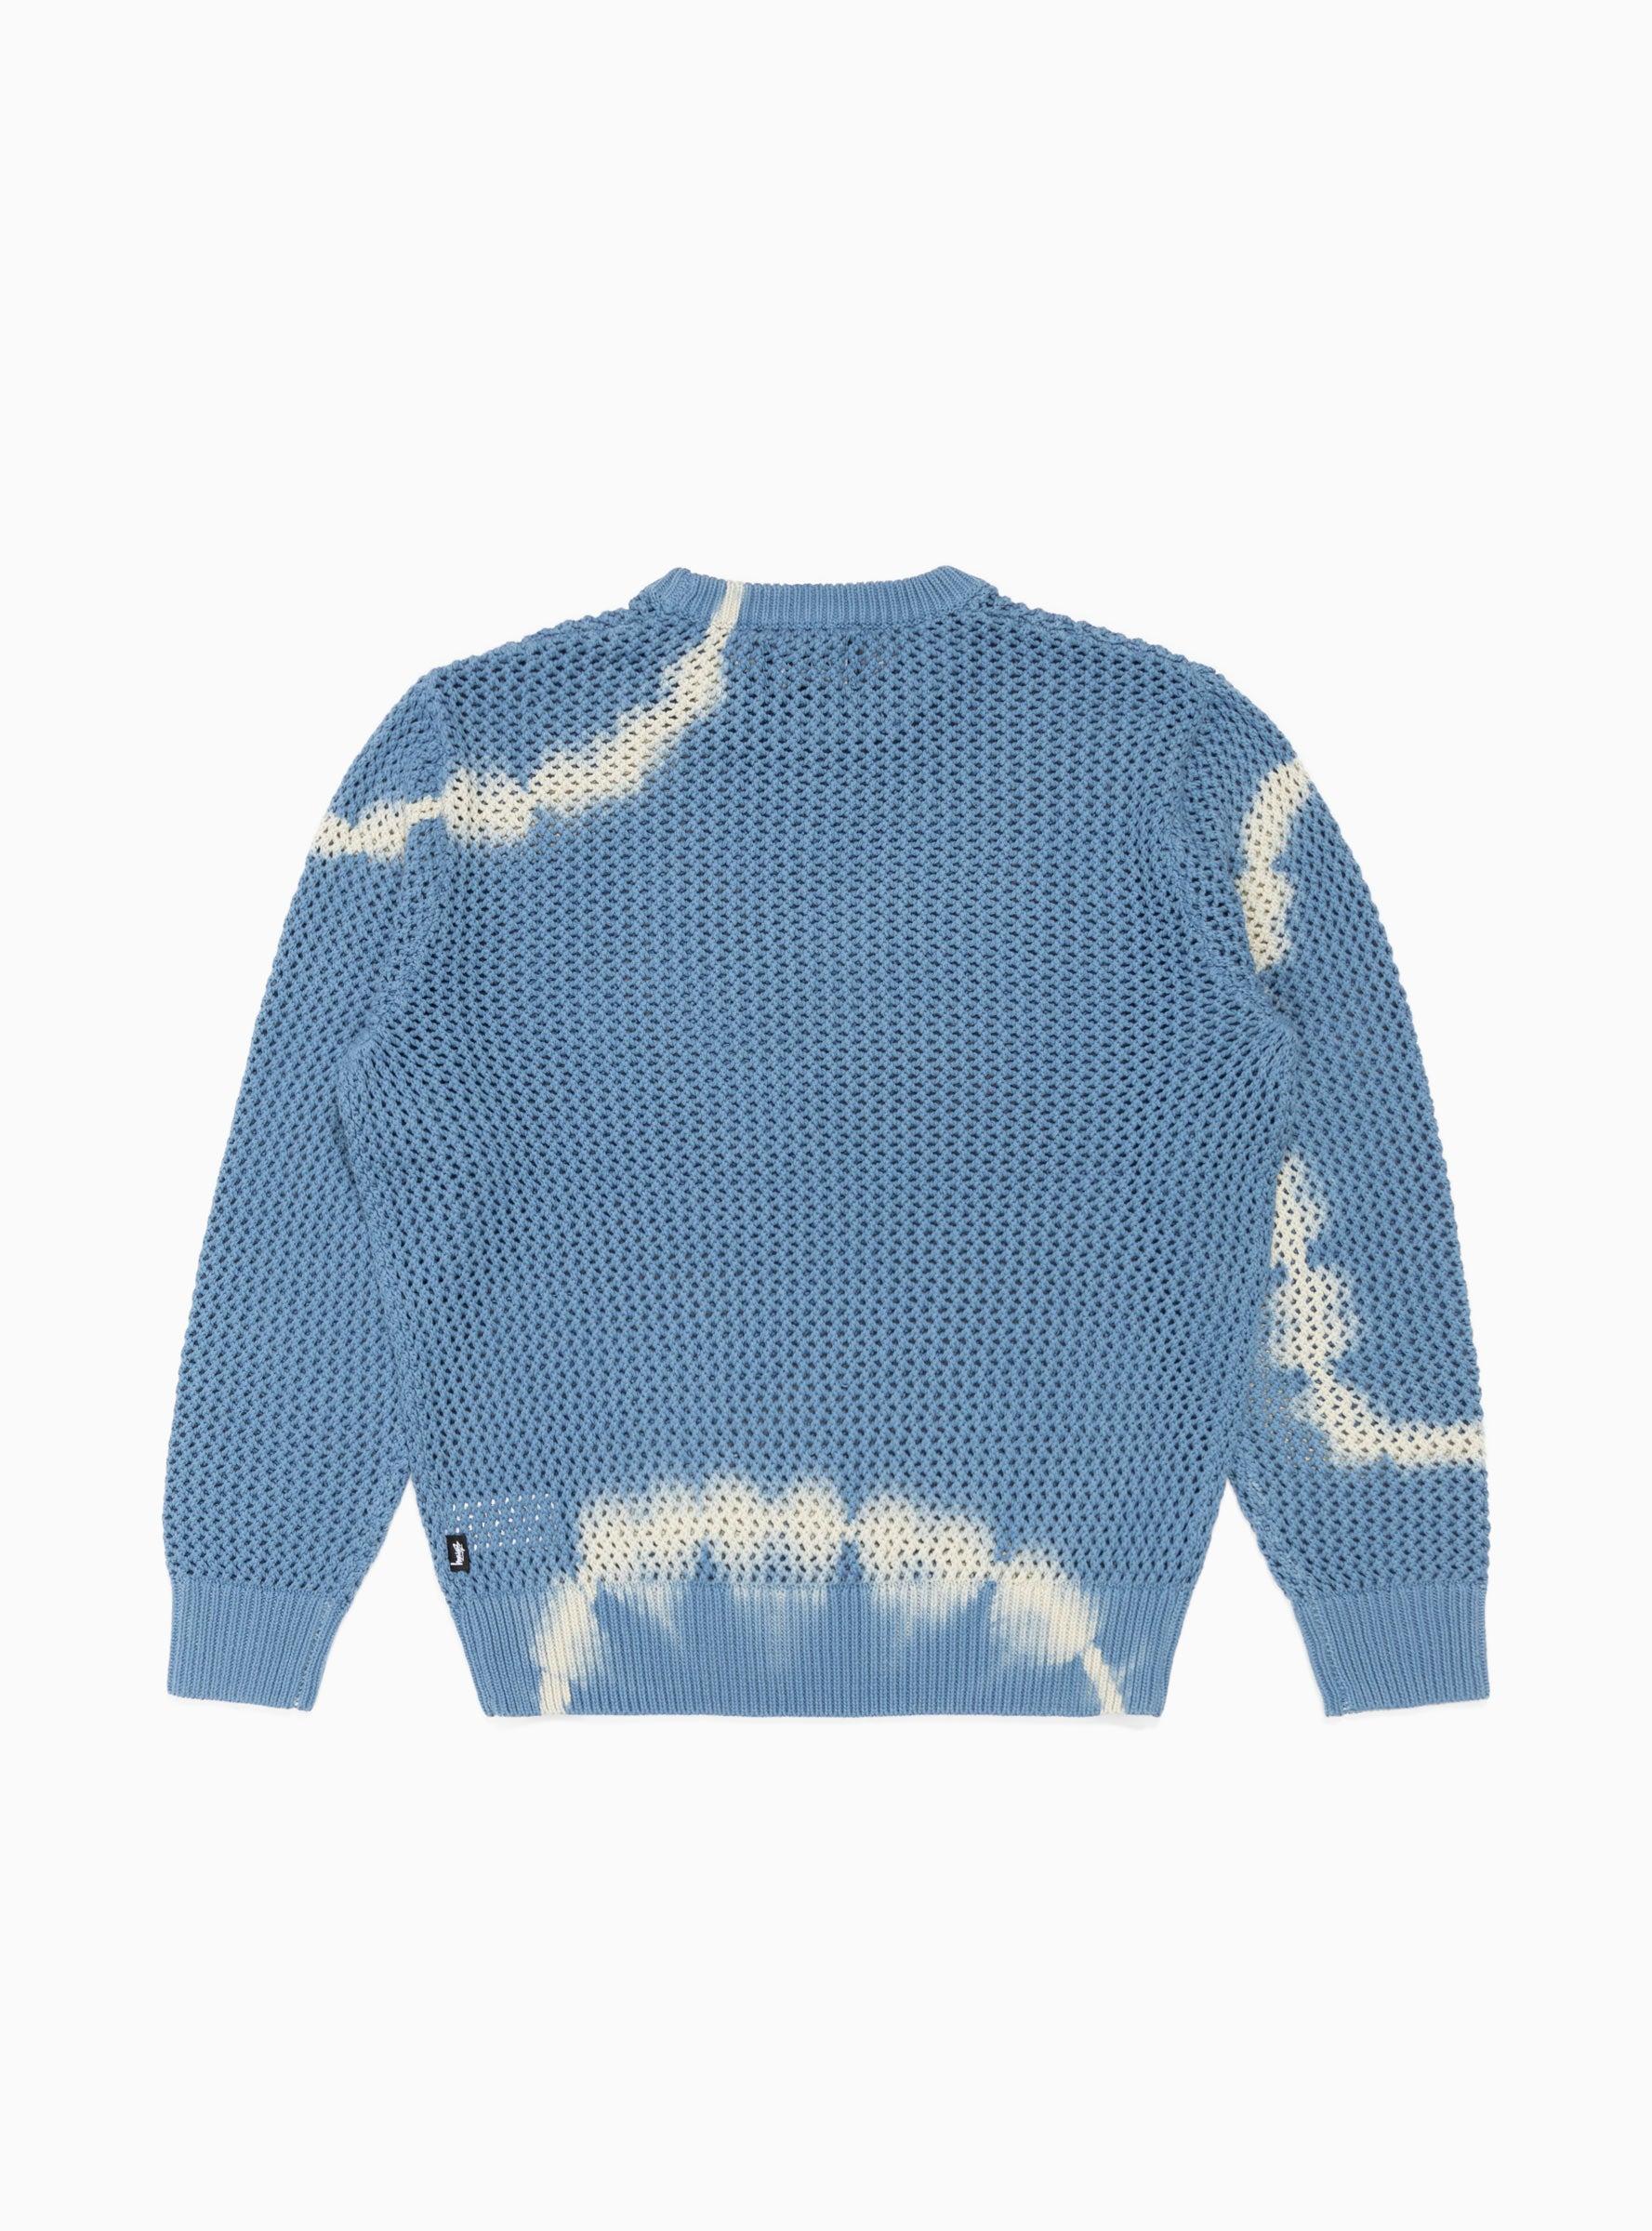 Stussy Pig. Dyed Loose Gauge Sweater Blue for Men